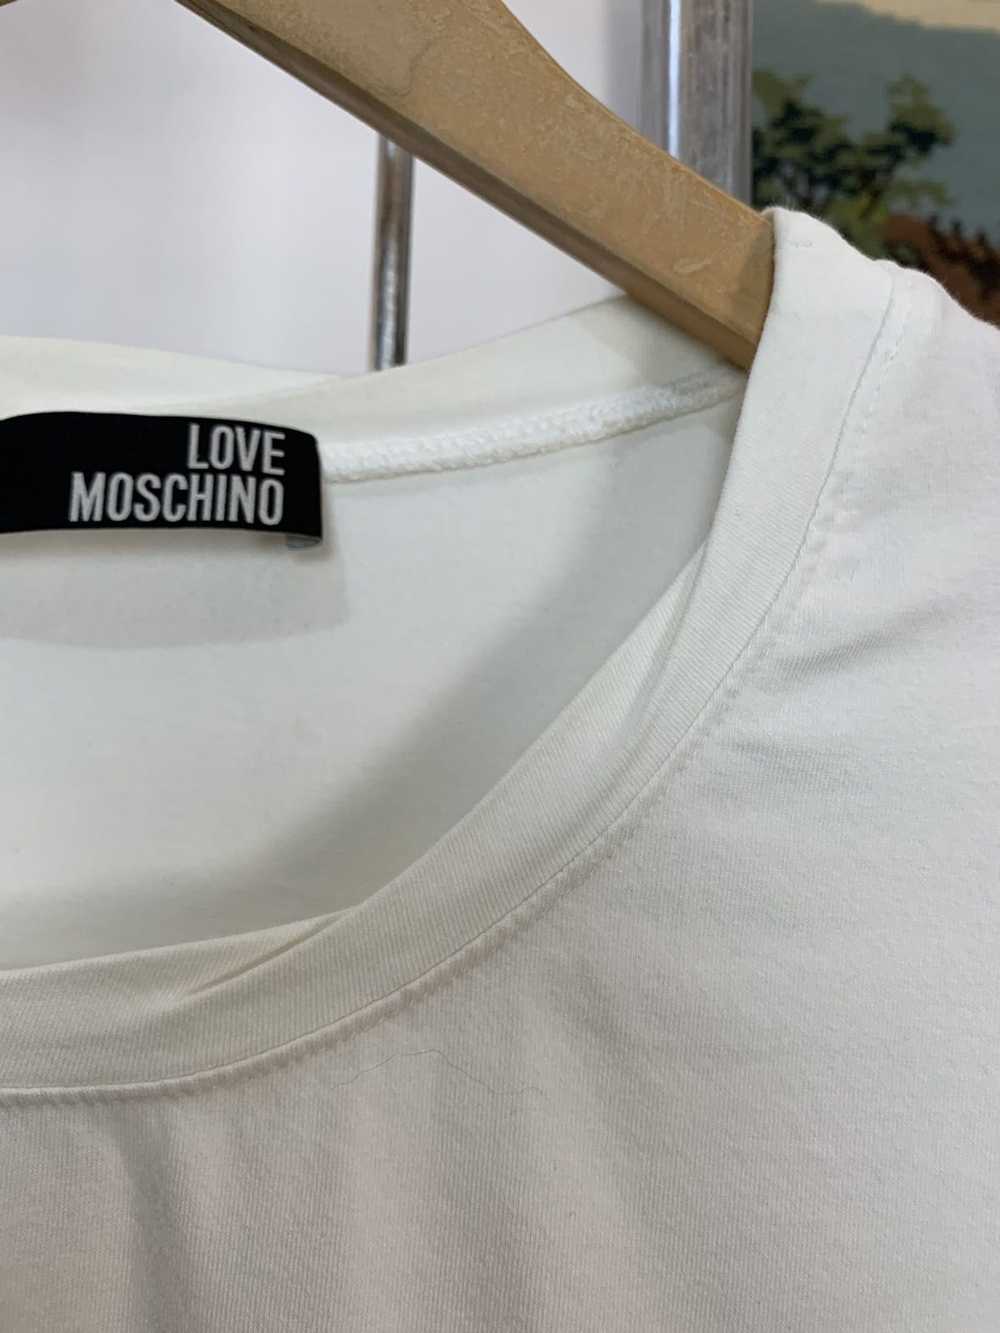 Moschino Love Moschino T-shirt - image 12